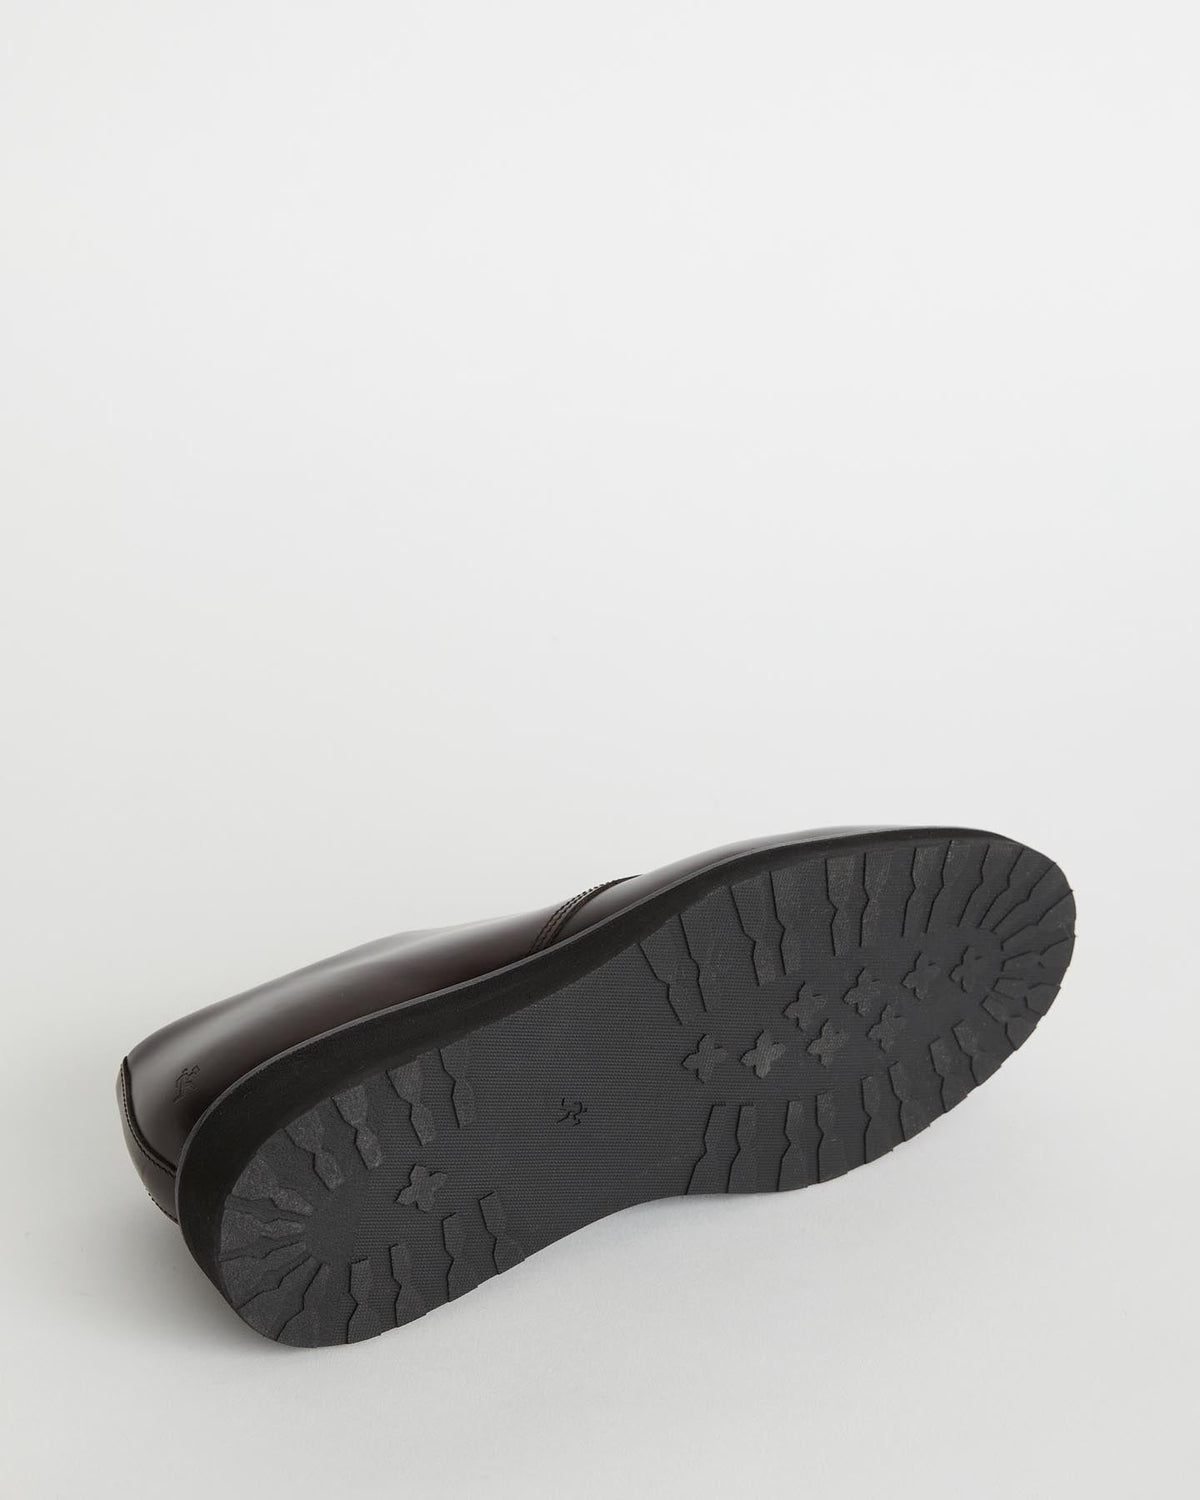 Chaussures derby à semelle compensée Menara en cuir